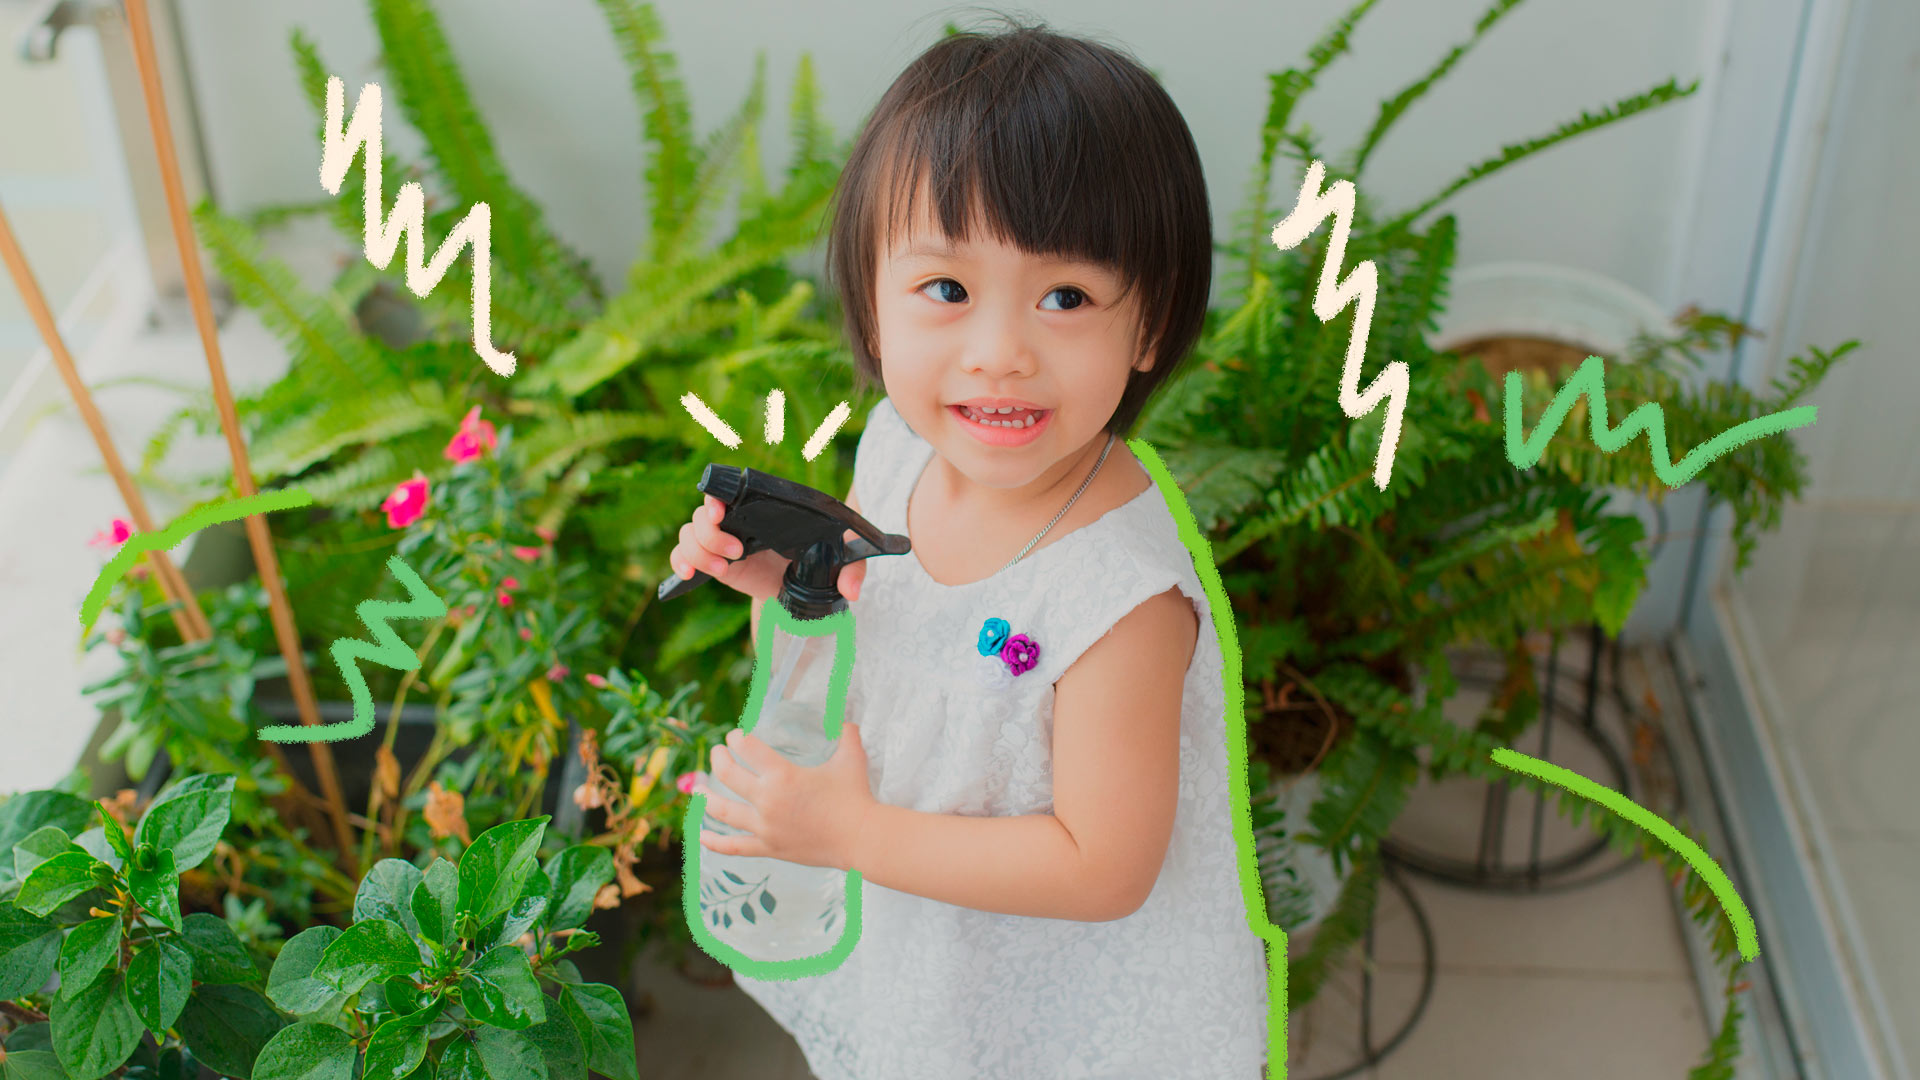 Imagem de uma menina oriental de cabelos curtos e pretos, aparentando ter 3 anos de idade, está com um borrifador na mão cuidando das samambaias da casa e sorrindo. Representa a conexão entre crianças e natureza